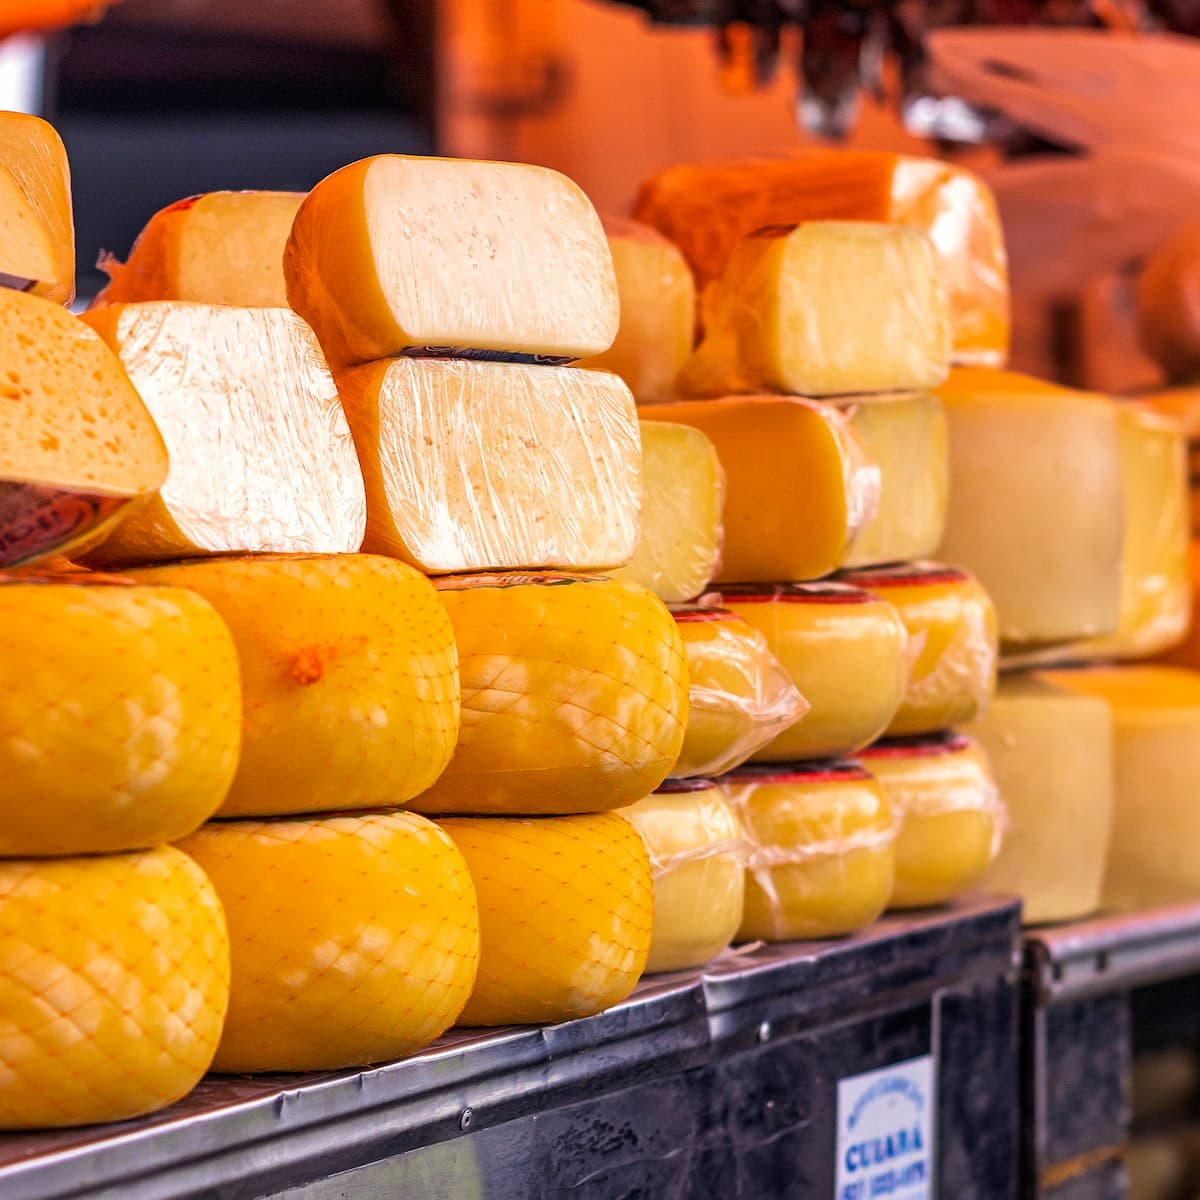 Imagem meramente ilustrativa de queijos, produzidos em uma Queijaria. Photo: Leandro Bezerra.